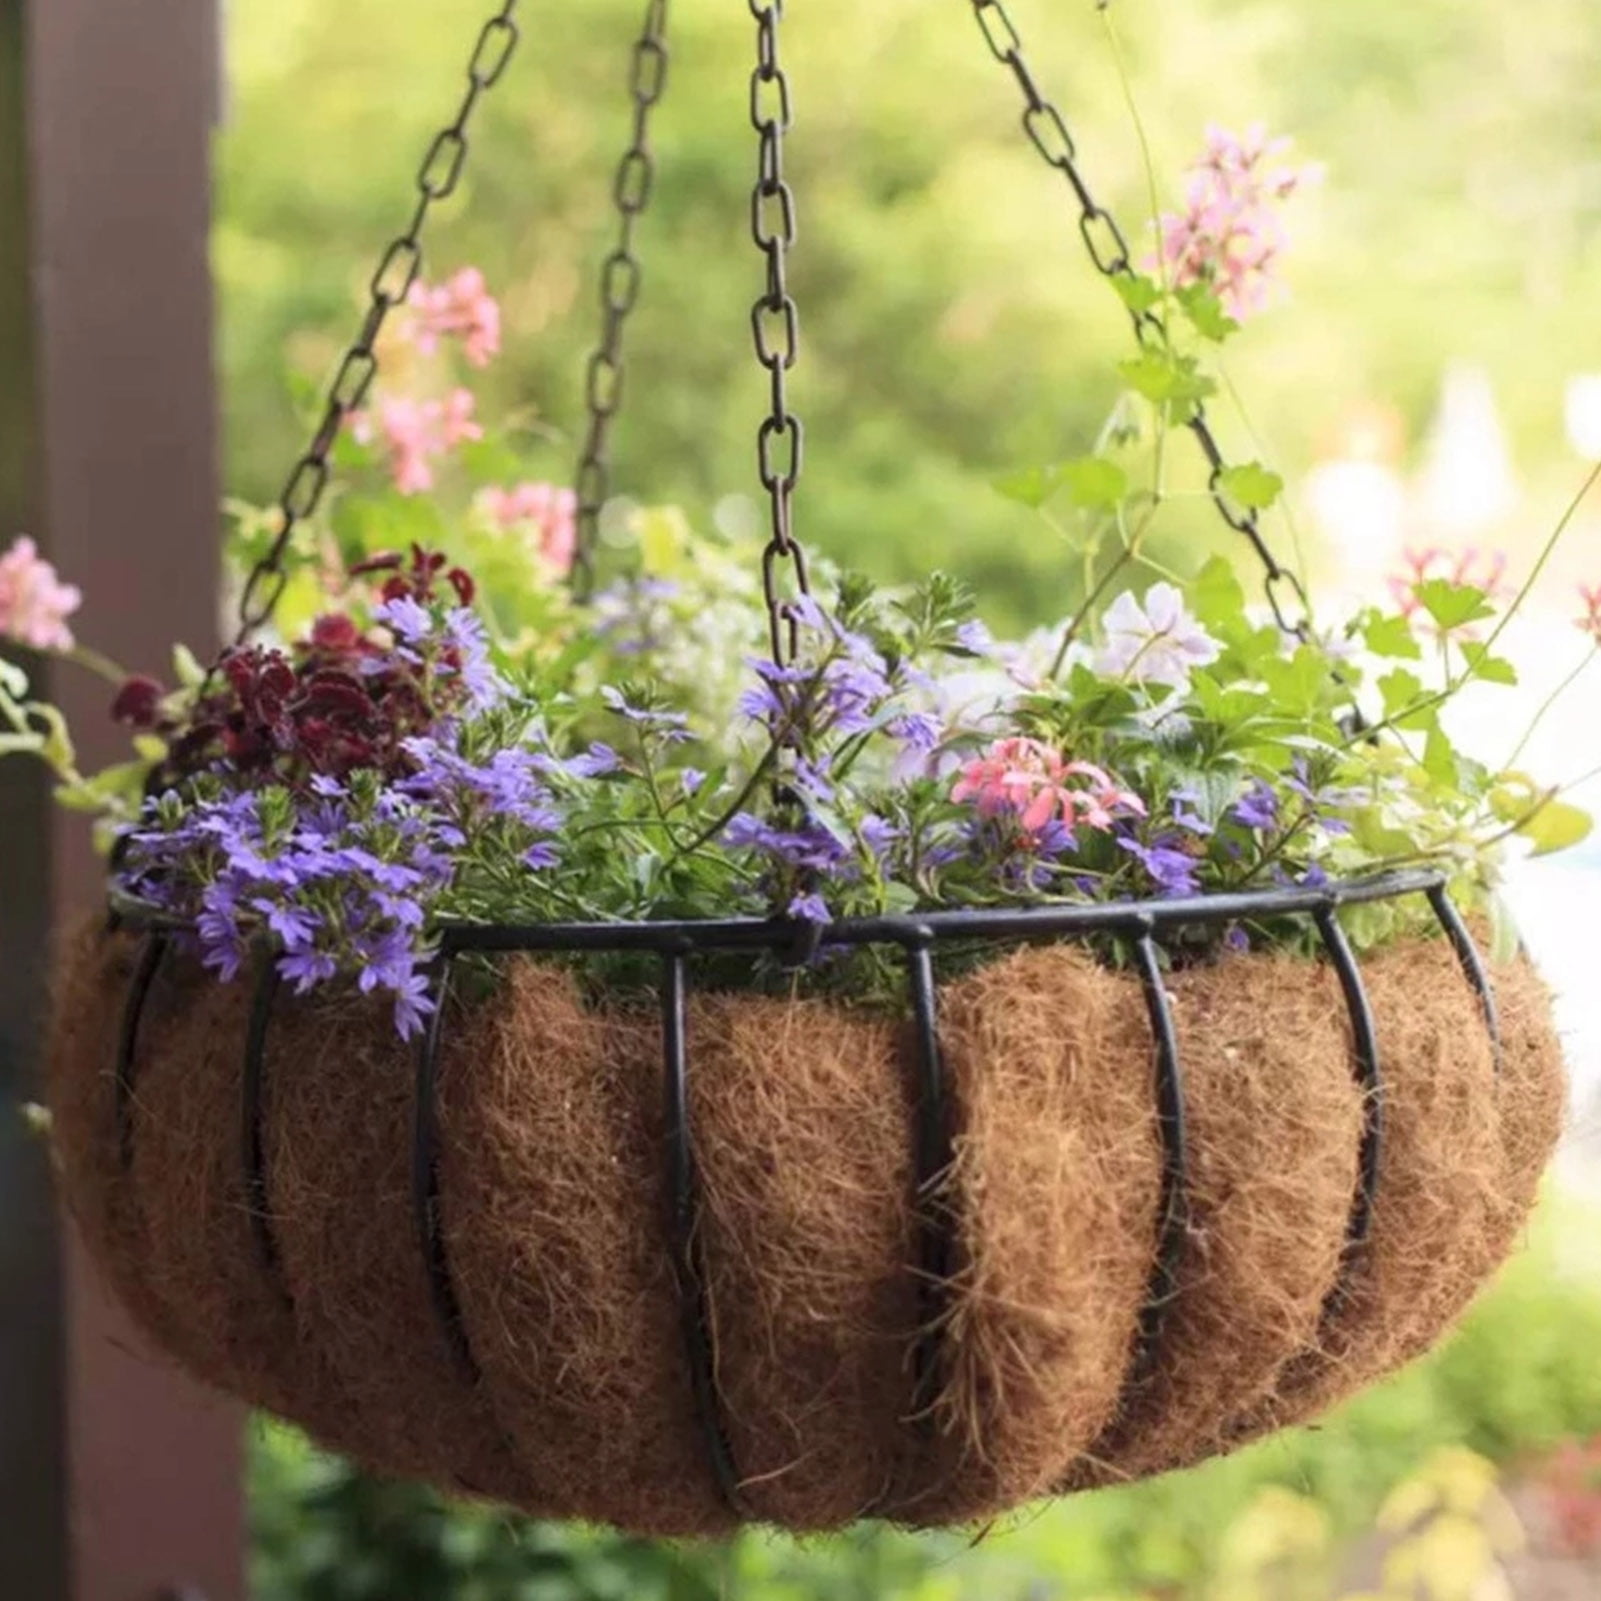 Details about   Home Garden Decor Flower Pot Balcony Square Pots Bonsai Bowl Plant Tray NEW 